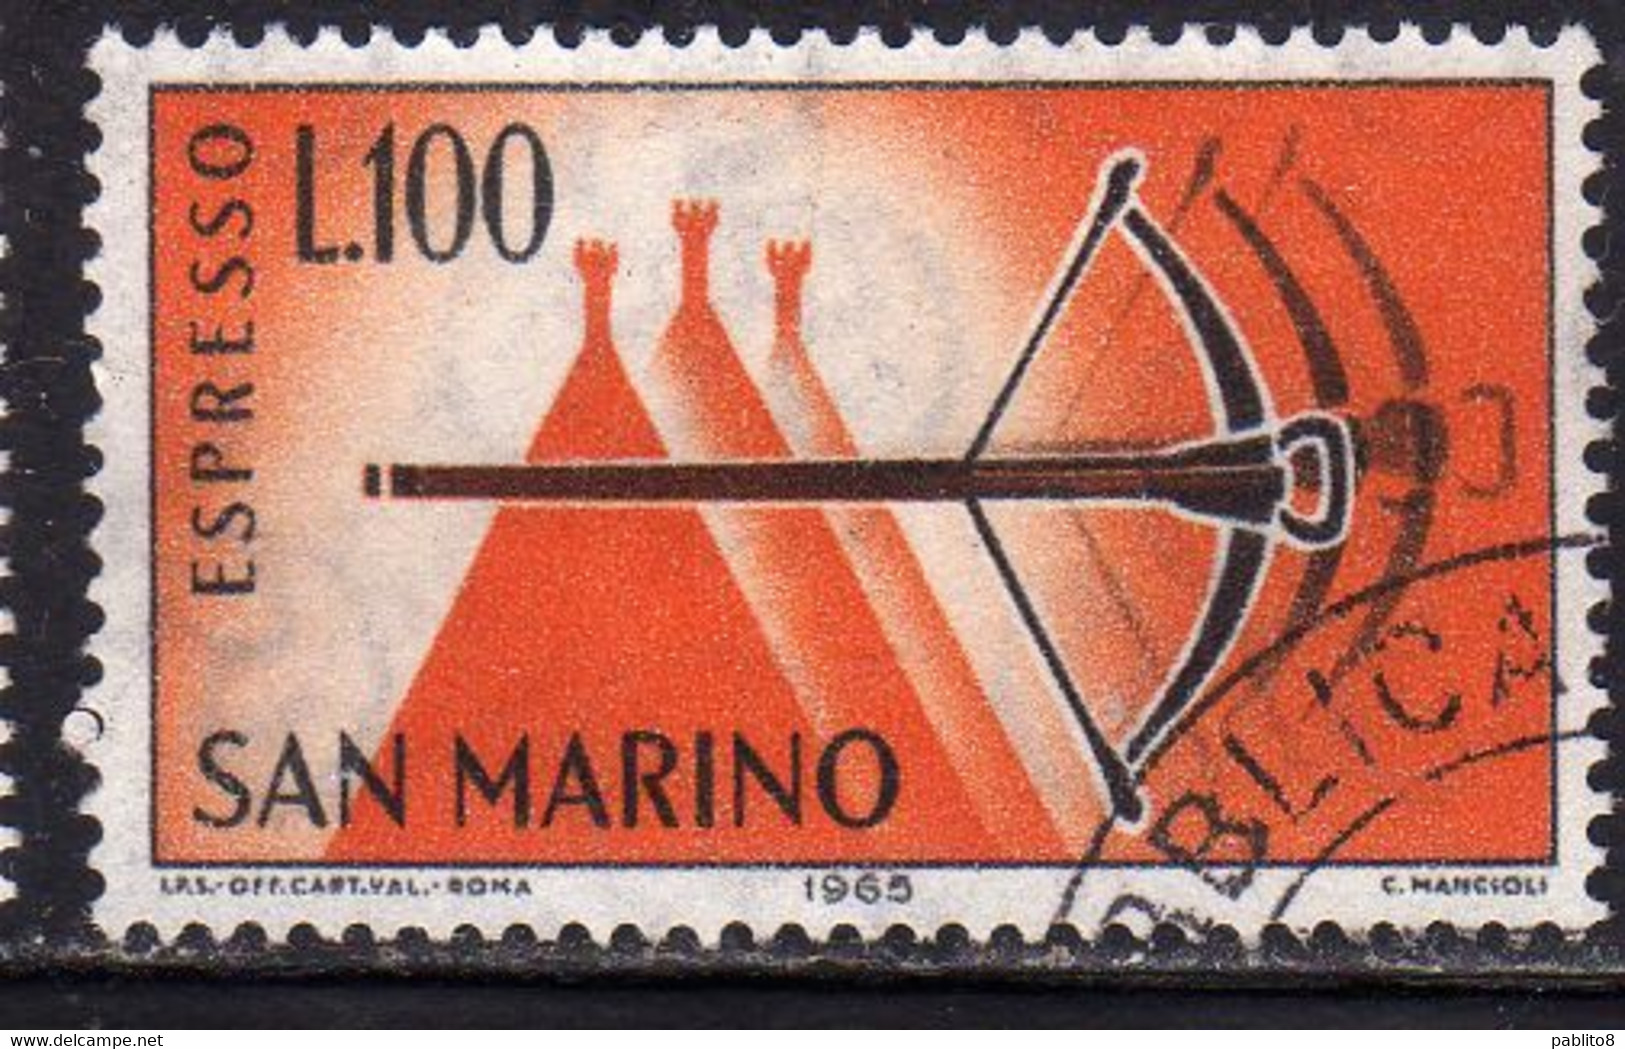 REPUBBLICA DI SAN MARINO 1966 ESPRESSI SPECIAL DELIVERY ESPRESSO BALESTRA LIRE 100 USATO USED OBLITERE' - Exprespost